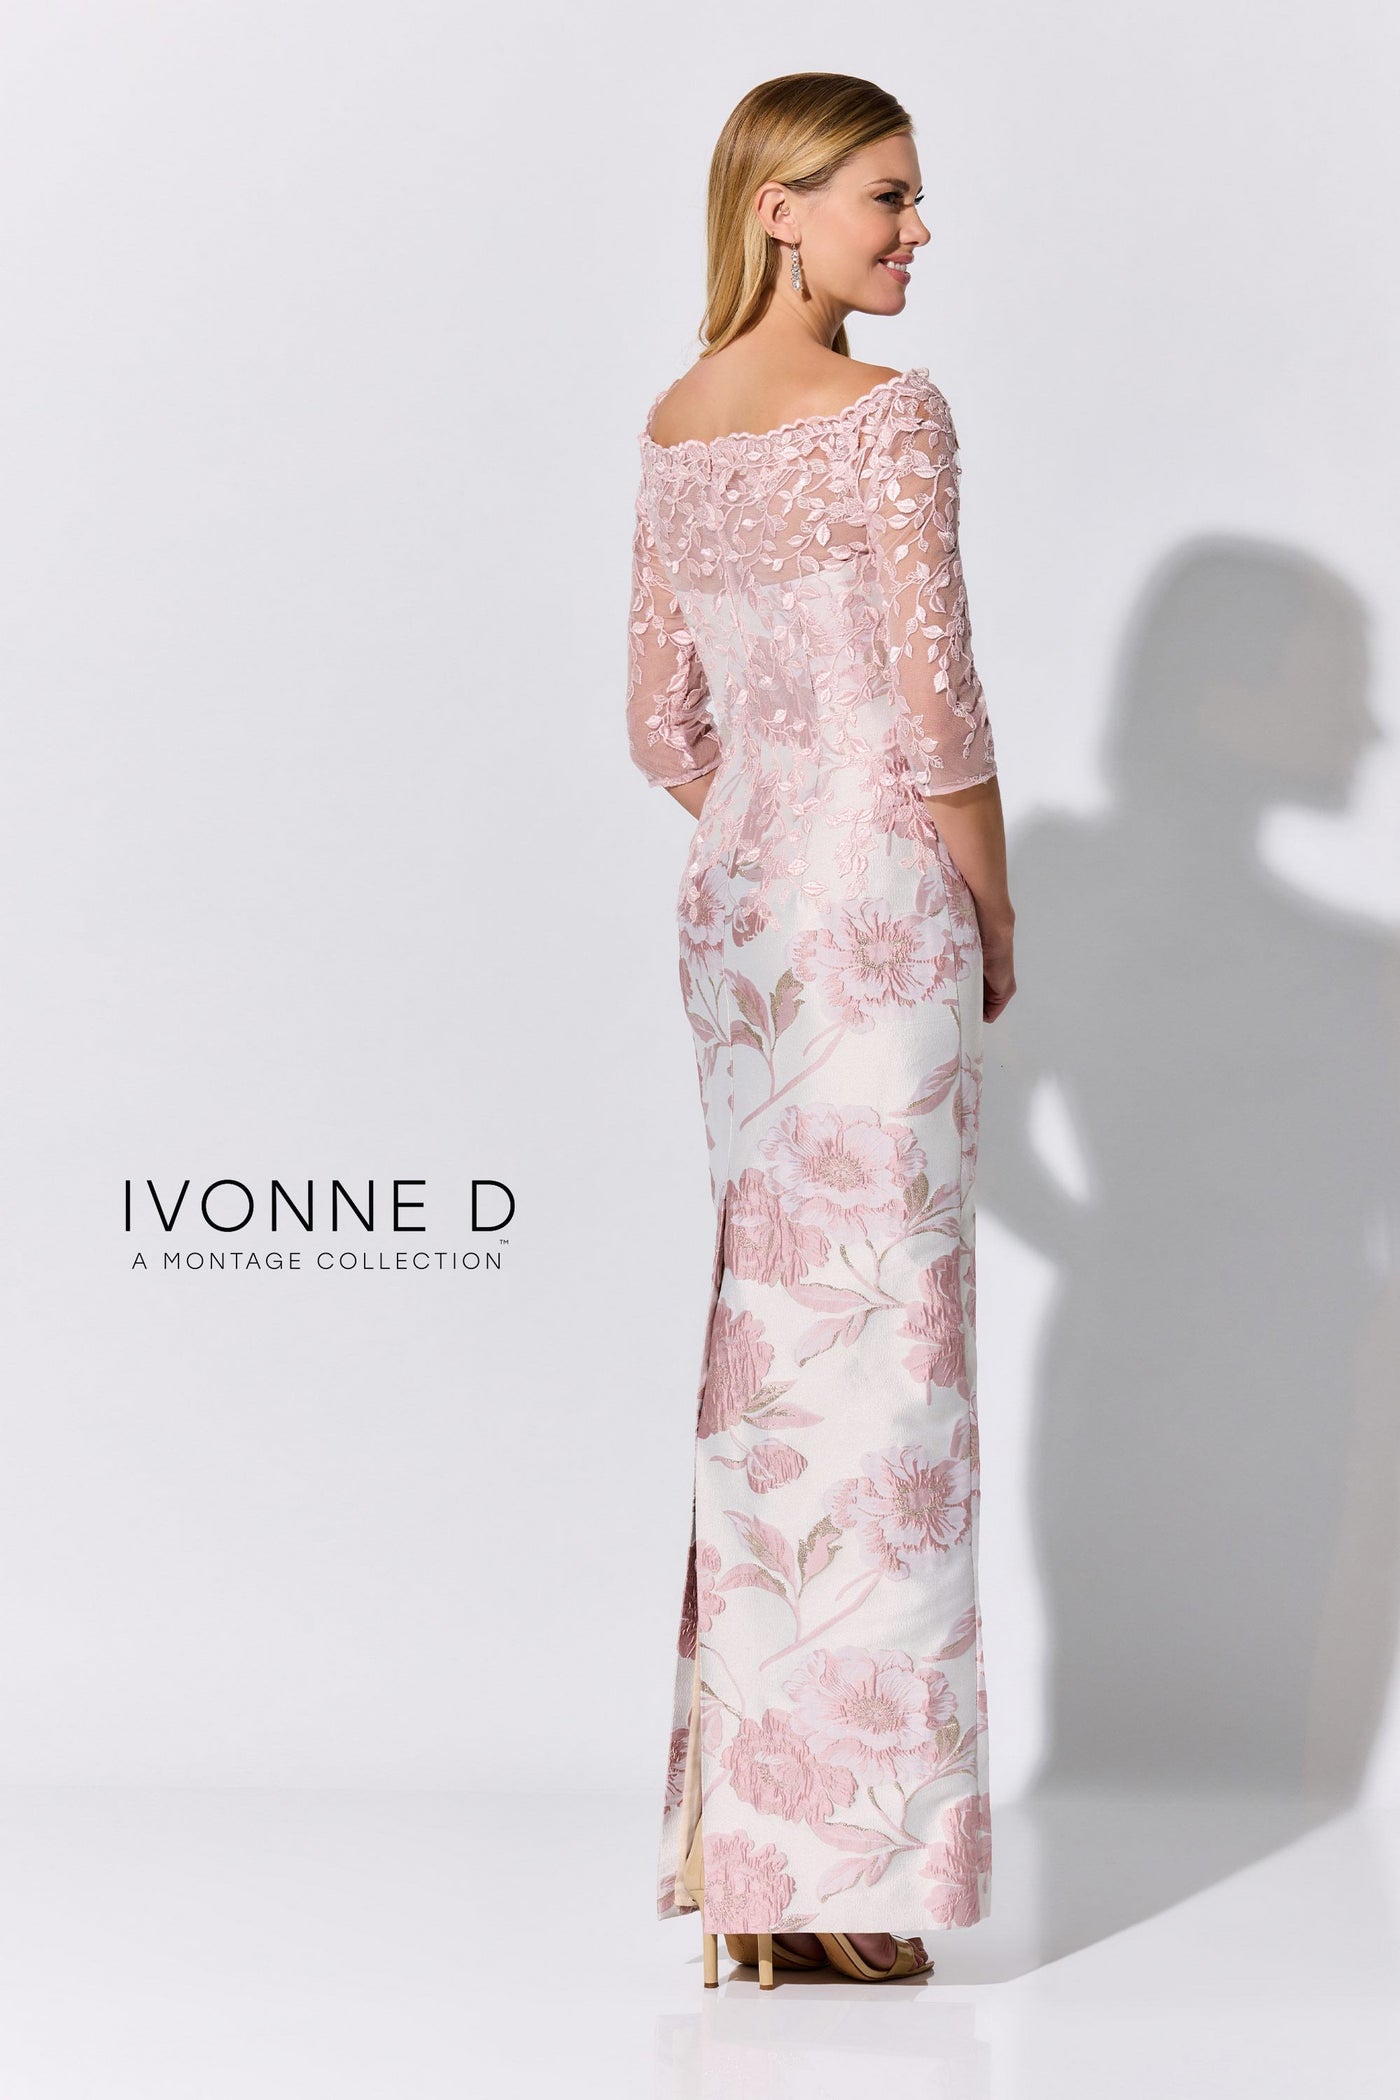 Ivonne D ID324